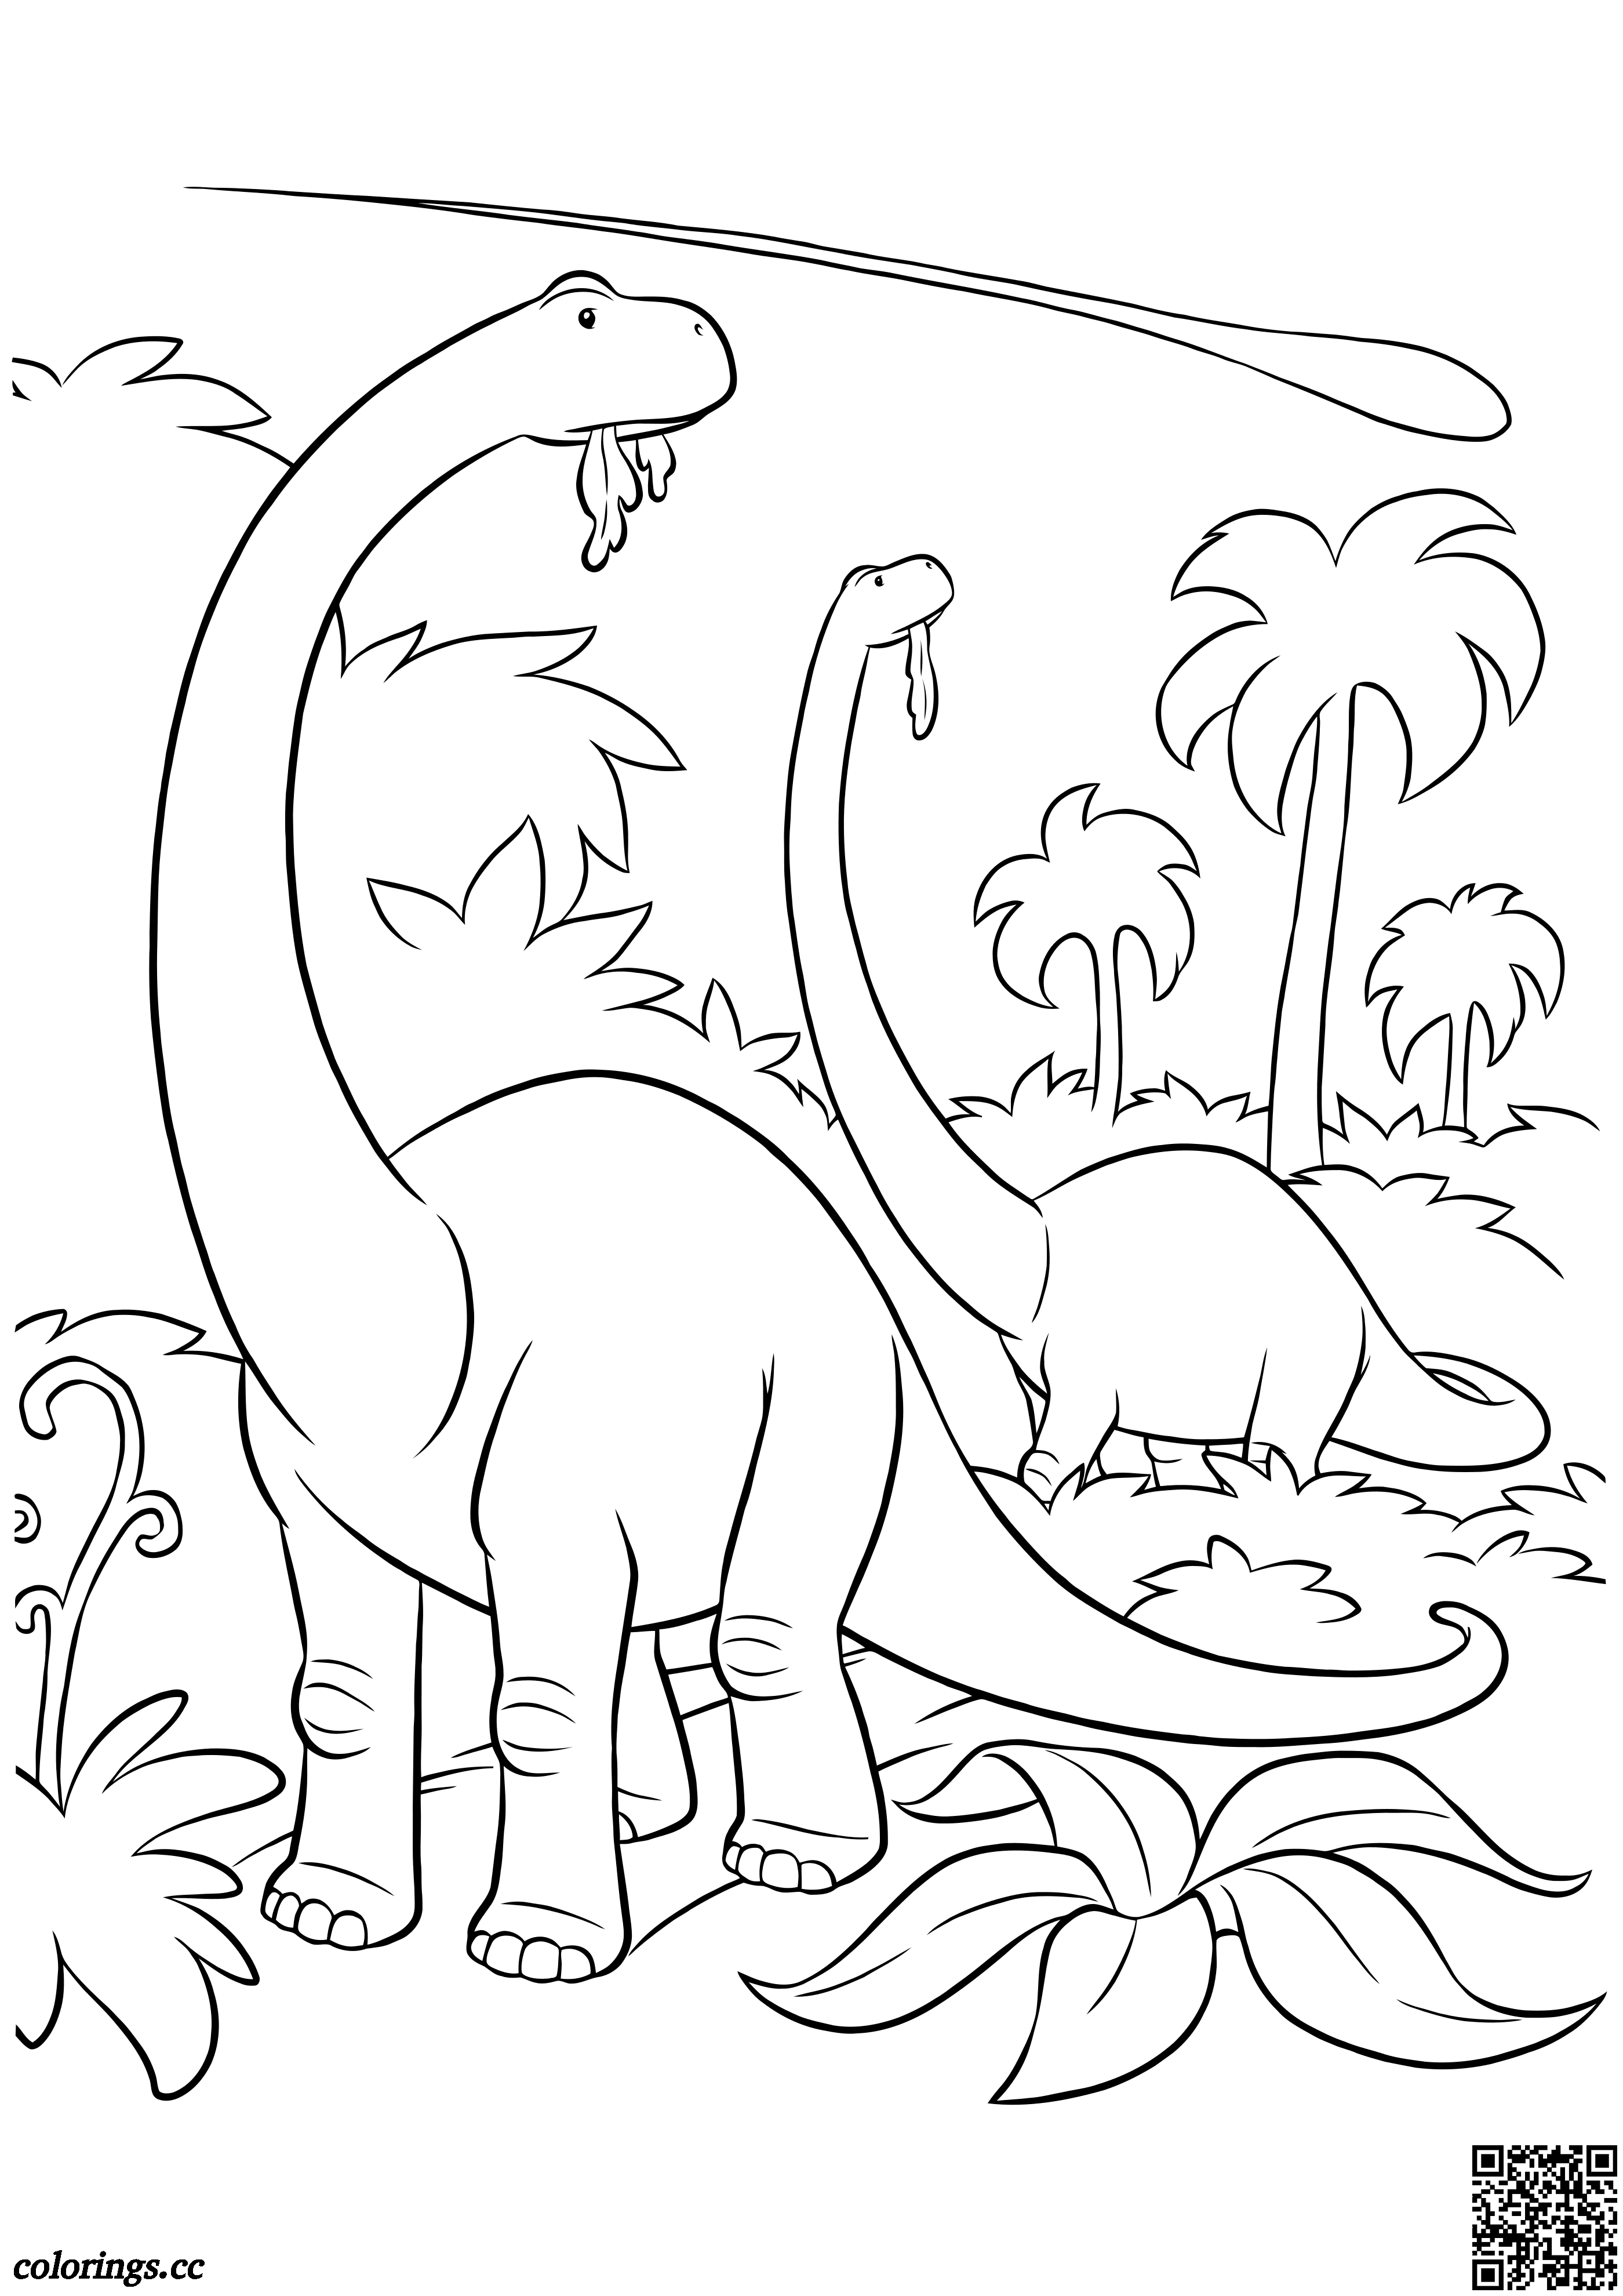 Desenho e Imagem Dinossauro Cometa para Colorir e Imprimir Grátis